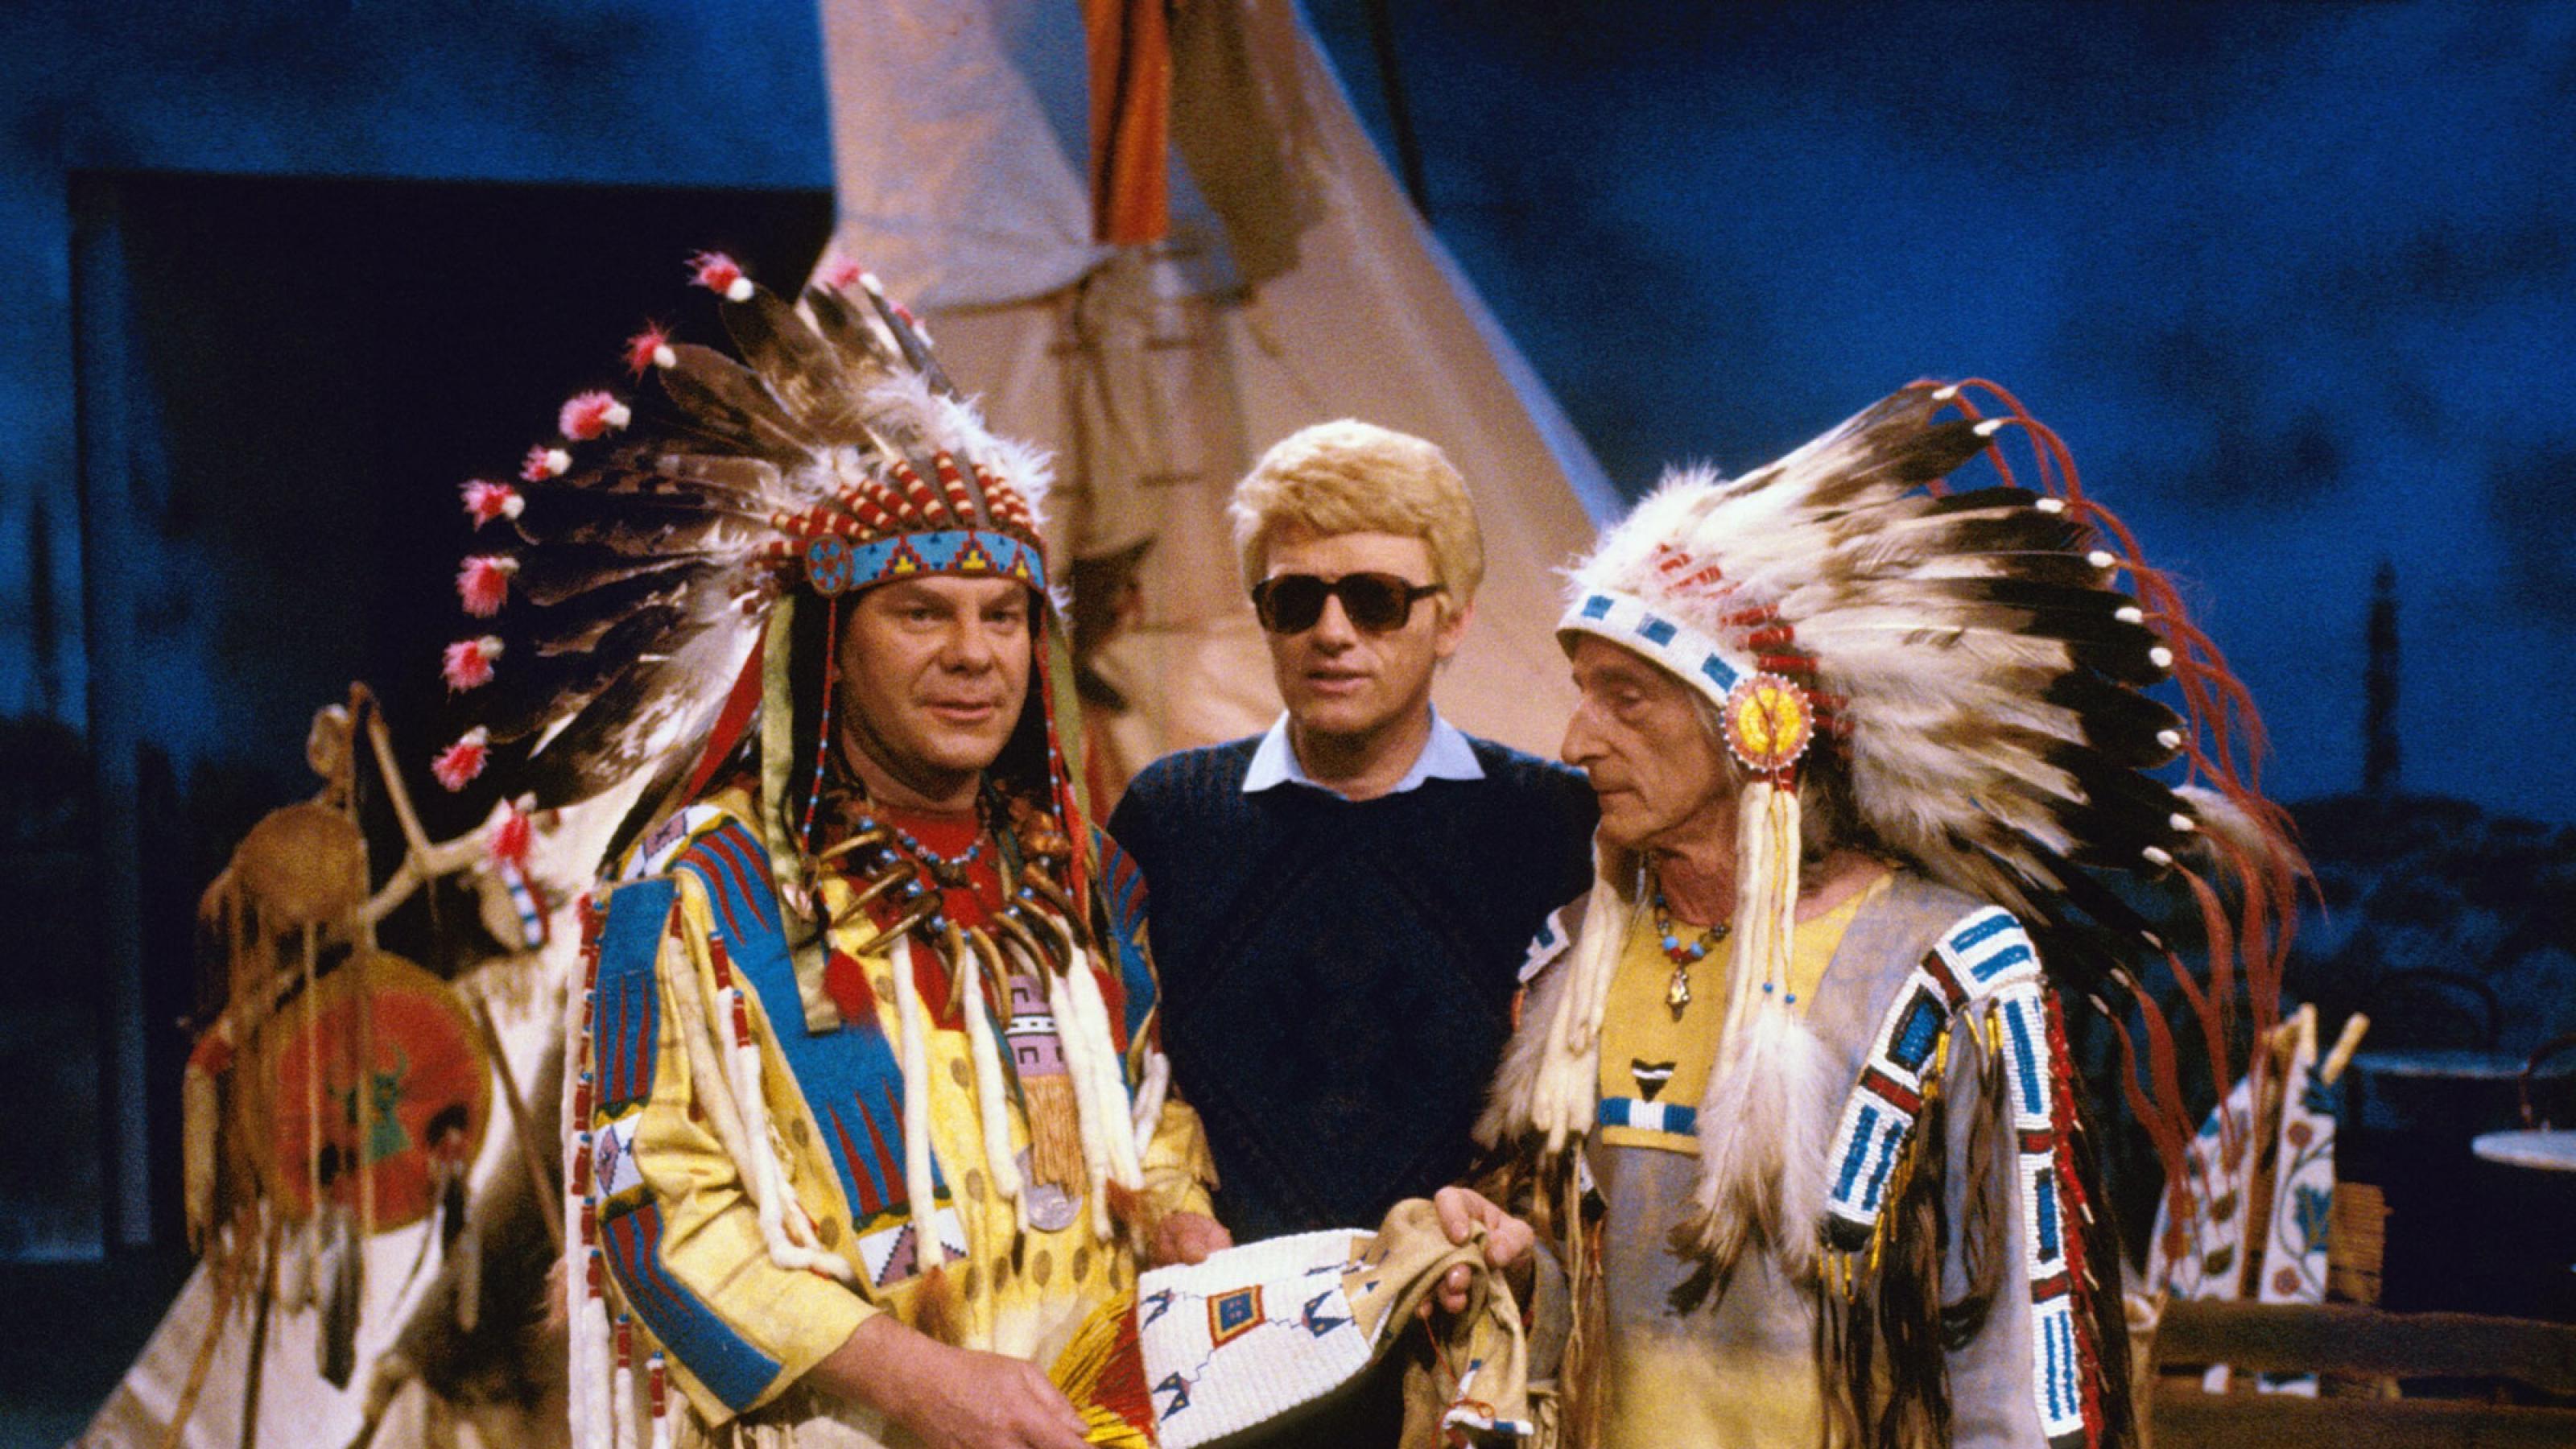 Heino im Jahr 1988 mit als Indianer verkleideten Fans